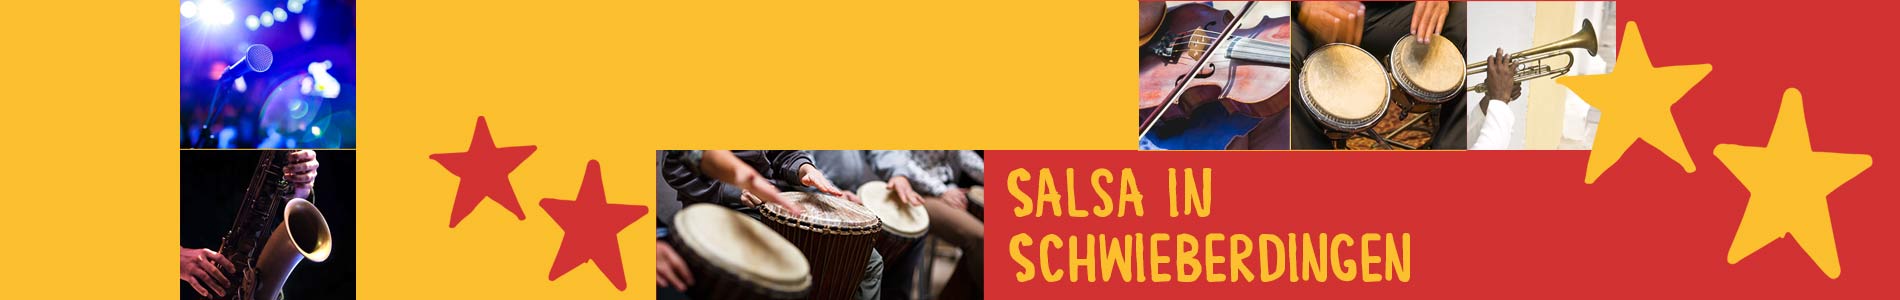 Salsa in Schwieberdingen – Salsa lernen und tanzen, Tanzkurse, Partys, Veranstaltungen